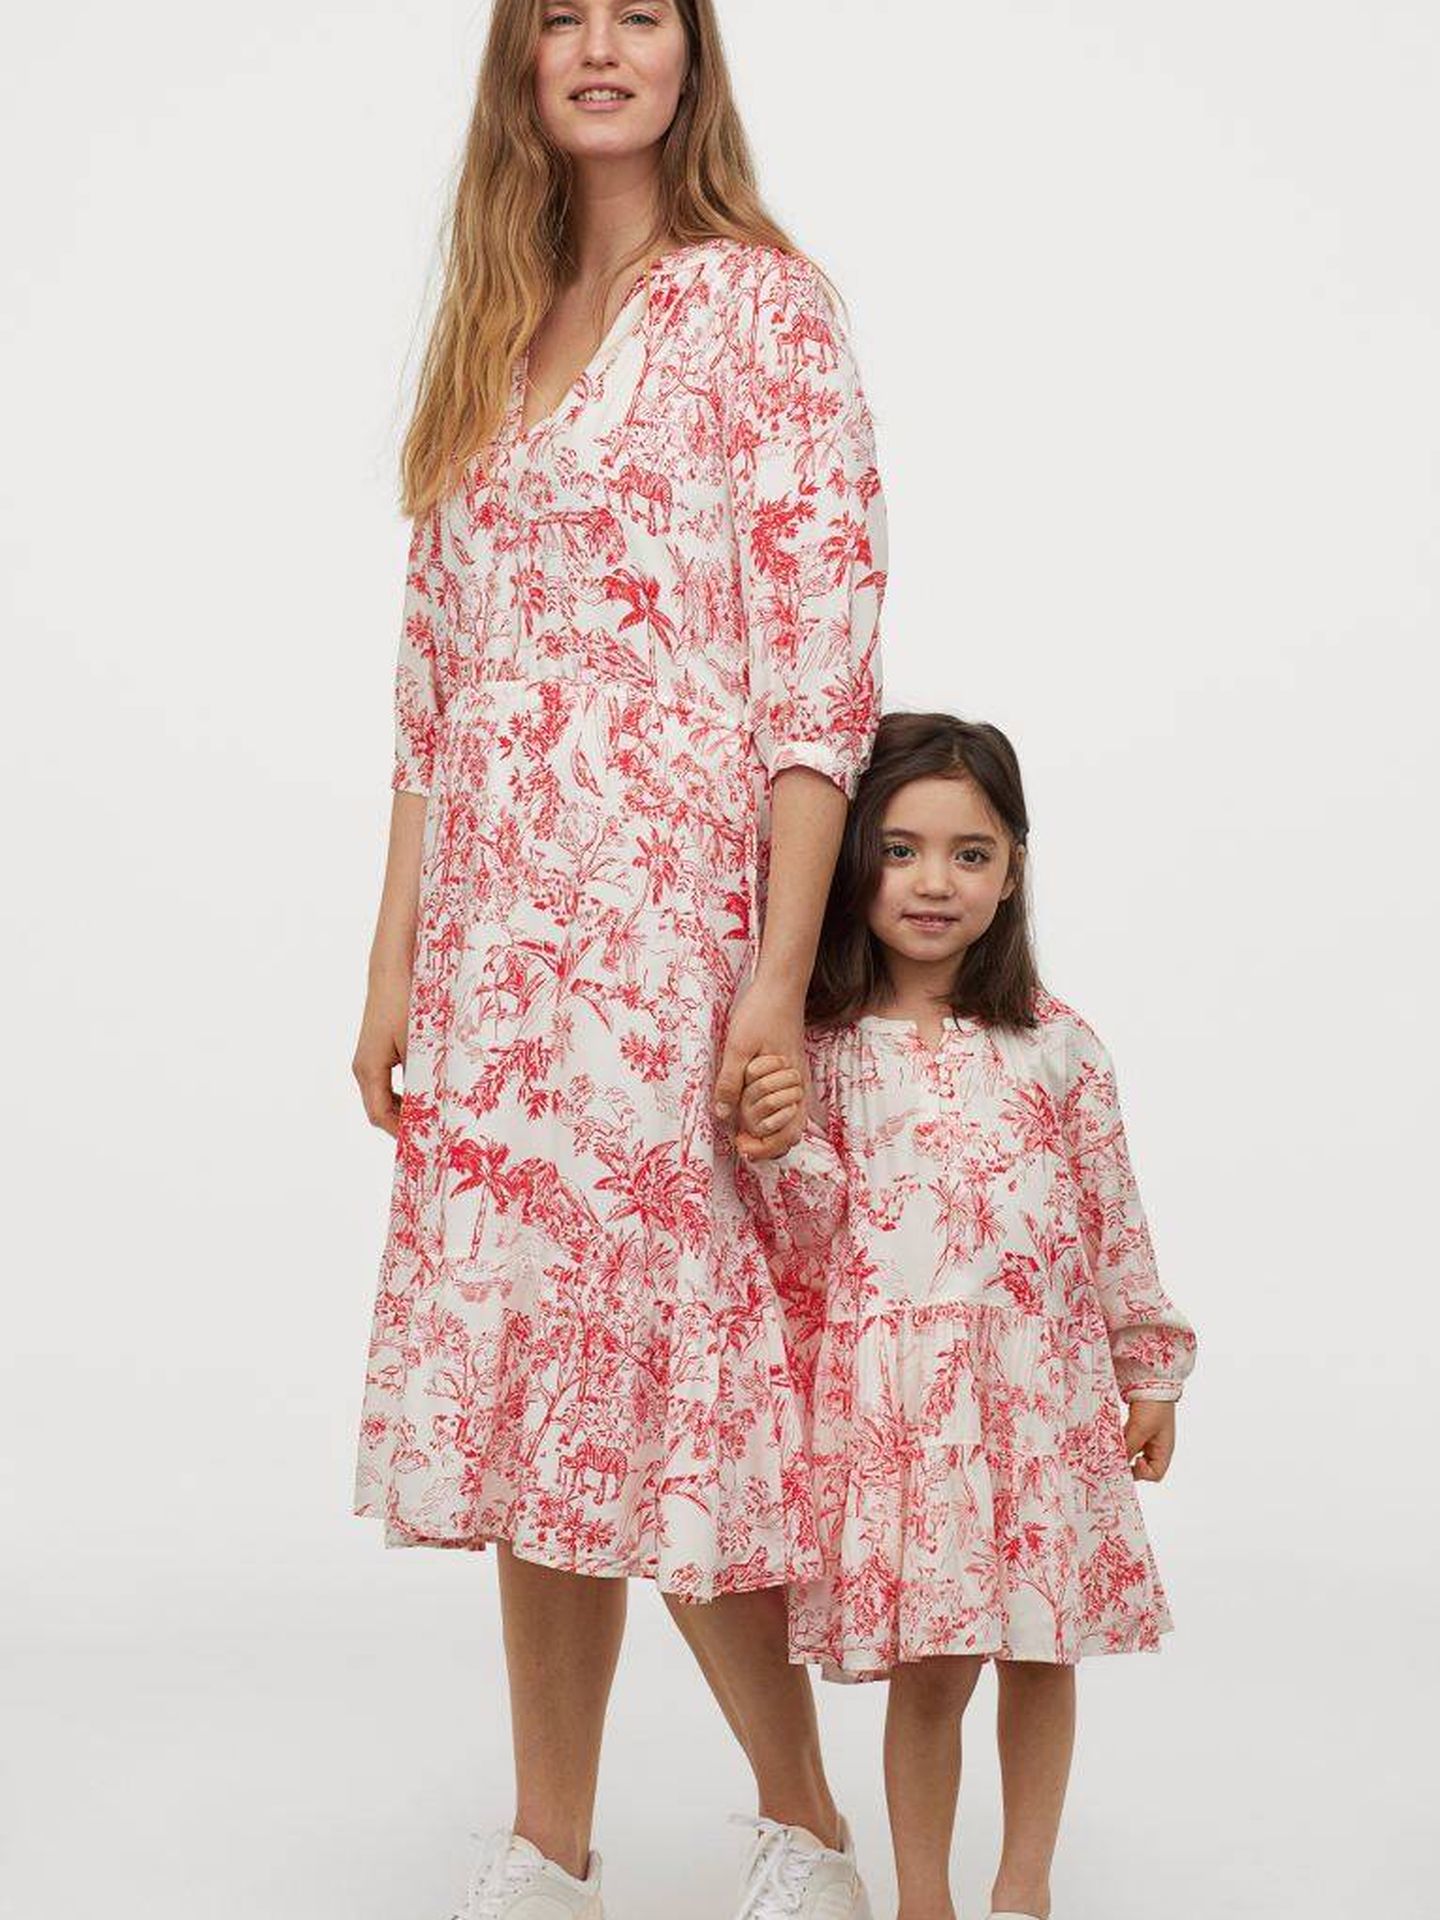 H&M quiere celebres el día de la madre llevando este a juego con tu hija